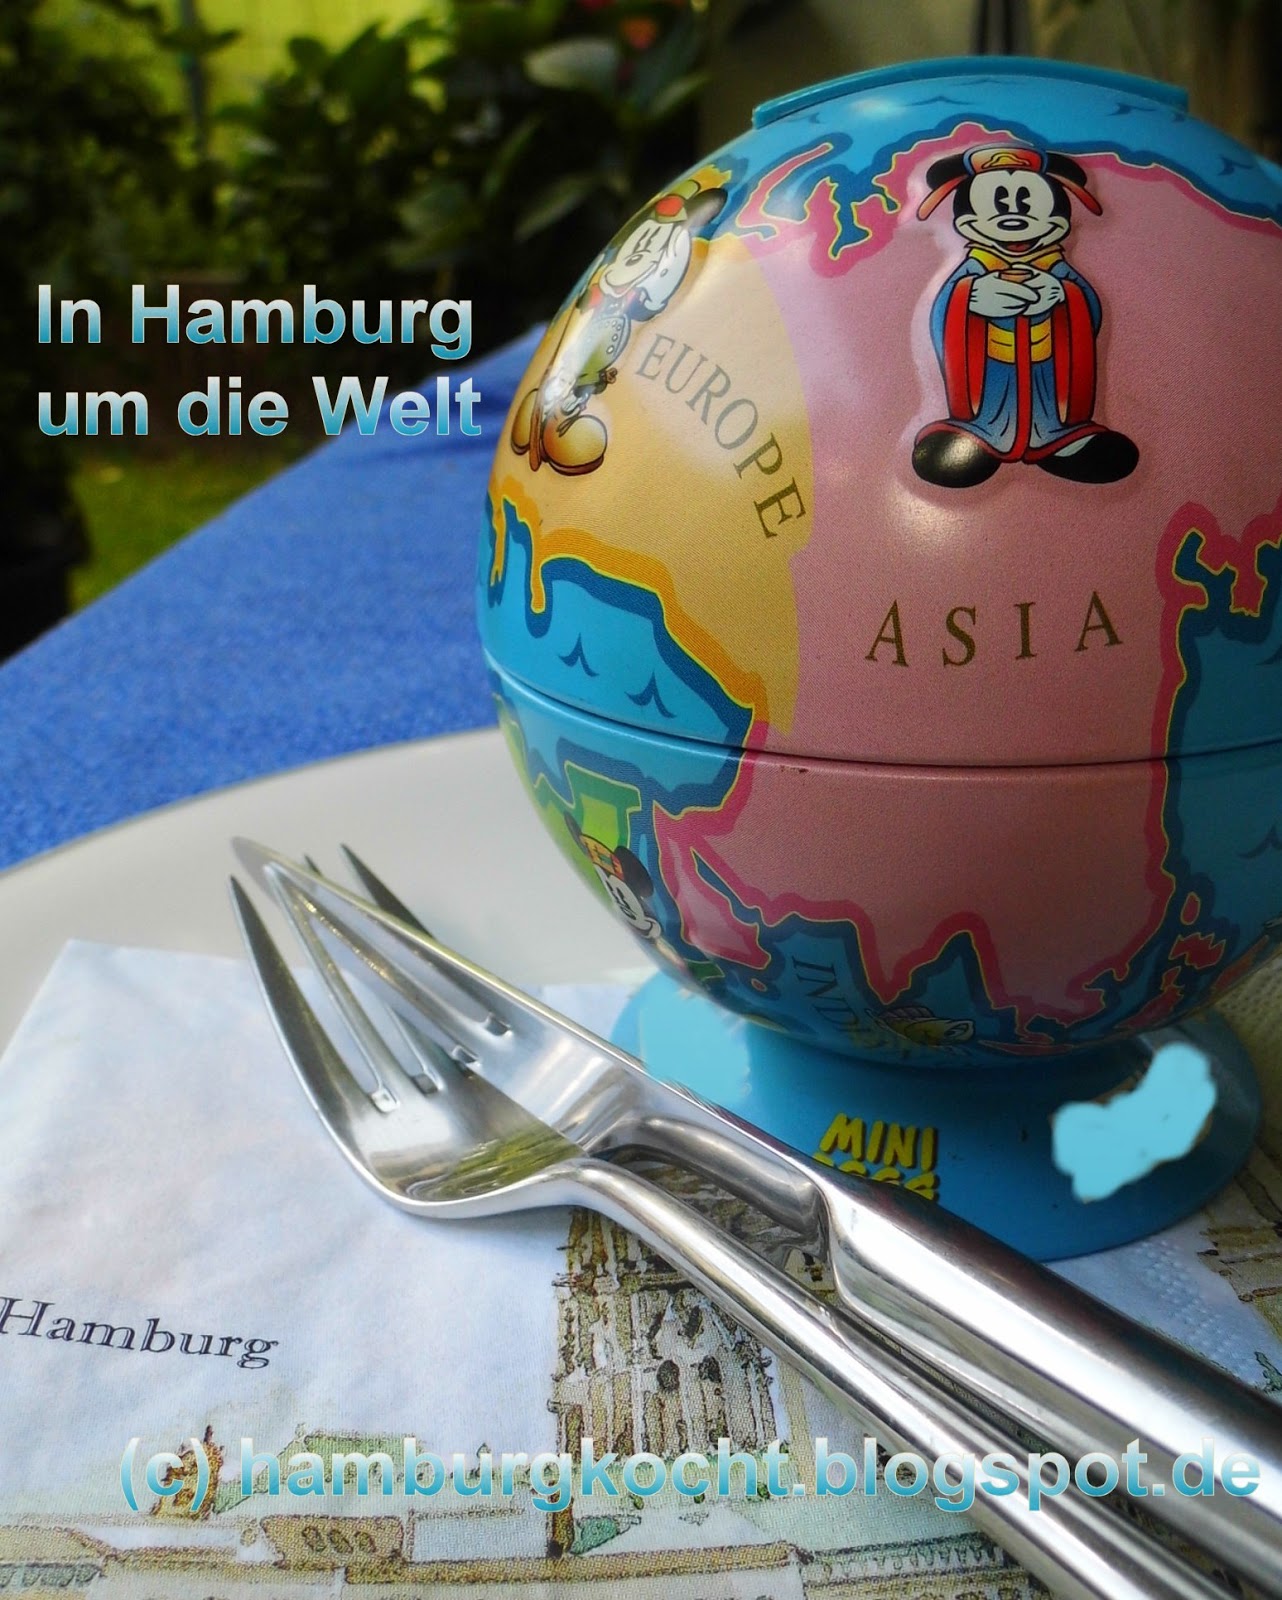 Hamburg kocht!: Nudeln mit angebratenem Chicorée und Speck